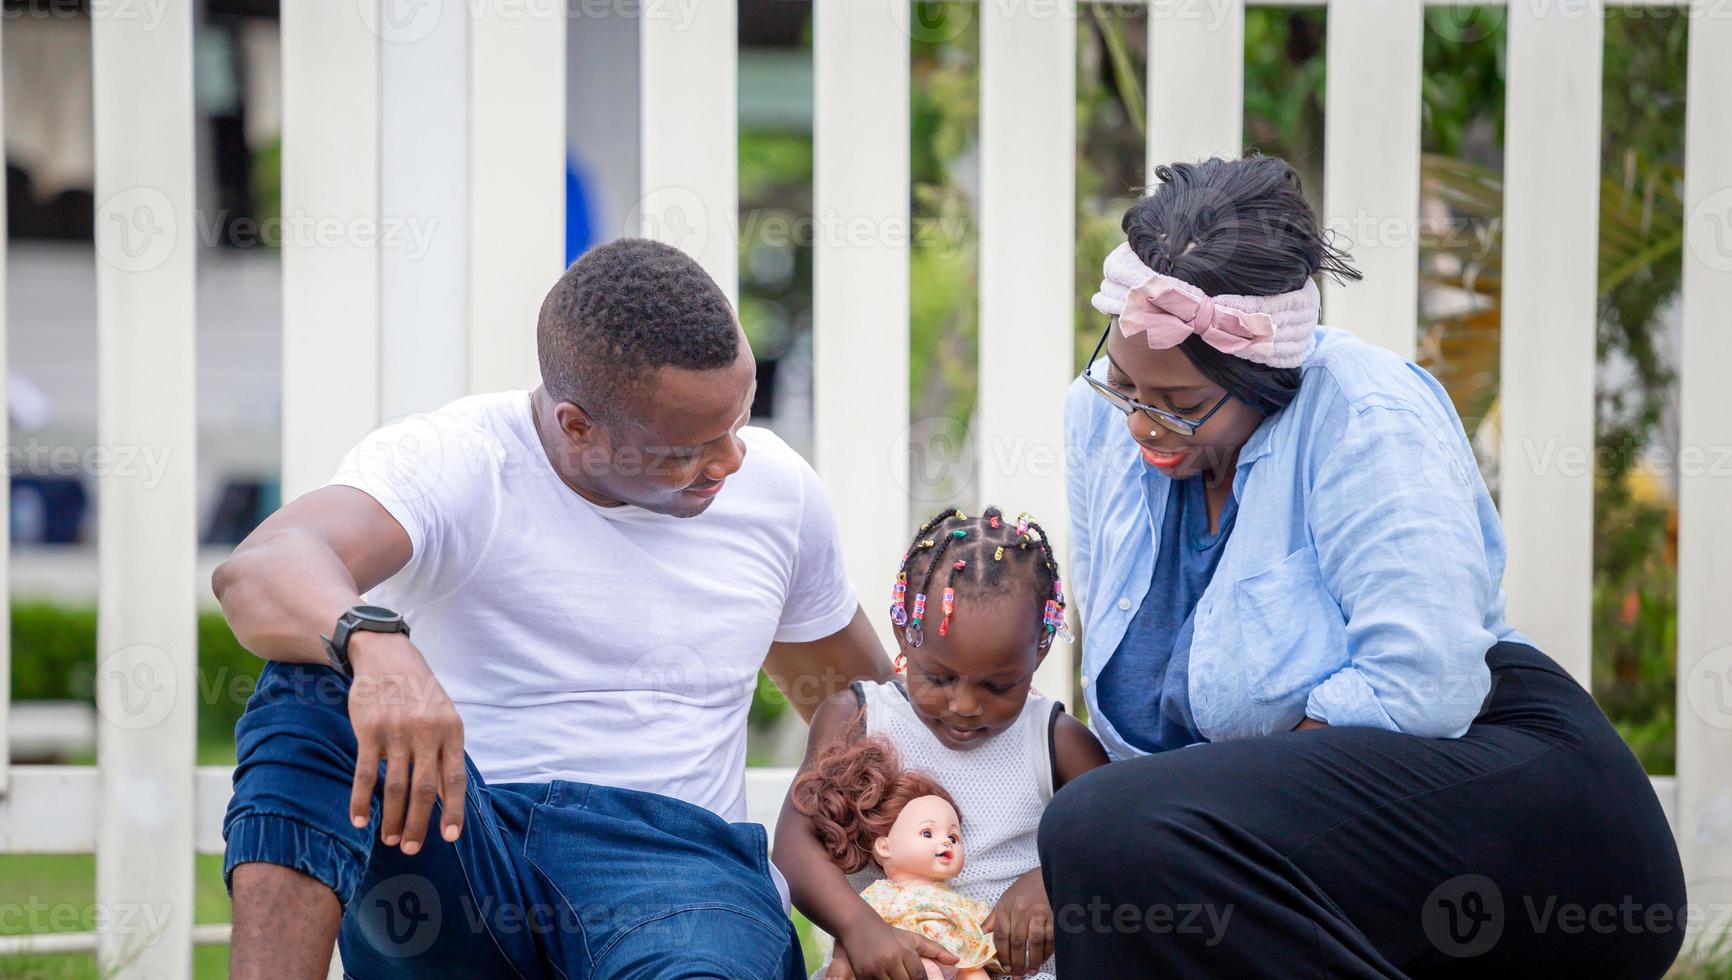 heureux père mère et fille jouant ensemble en plein air, joyeuse famille afro-américaine profitant du parc, concepts de famille de bonheur photo